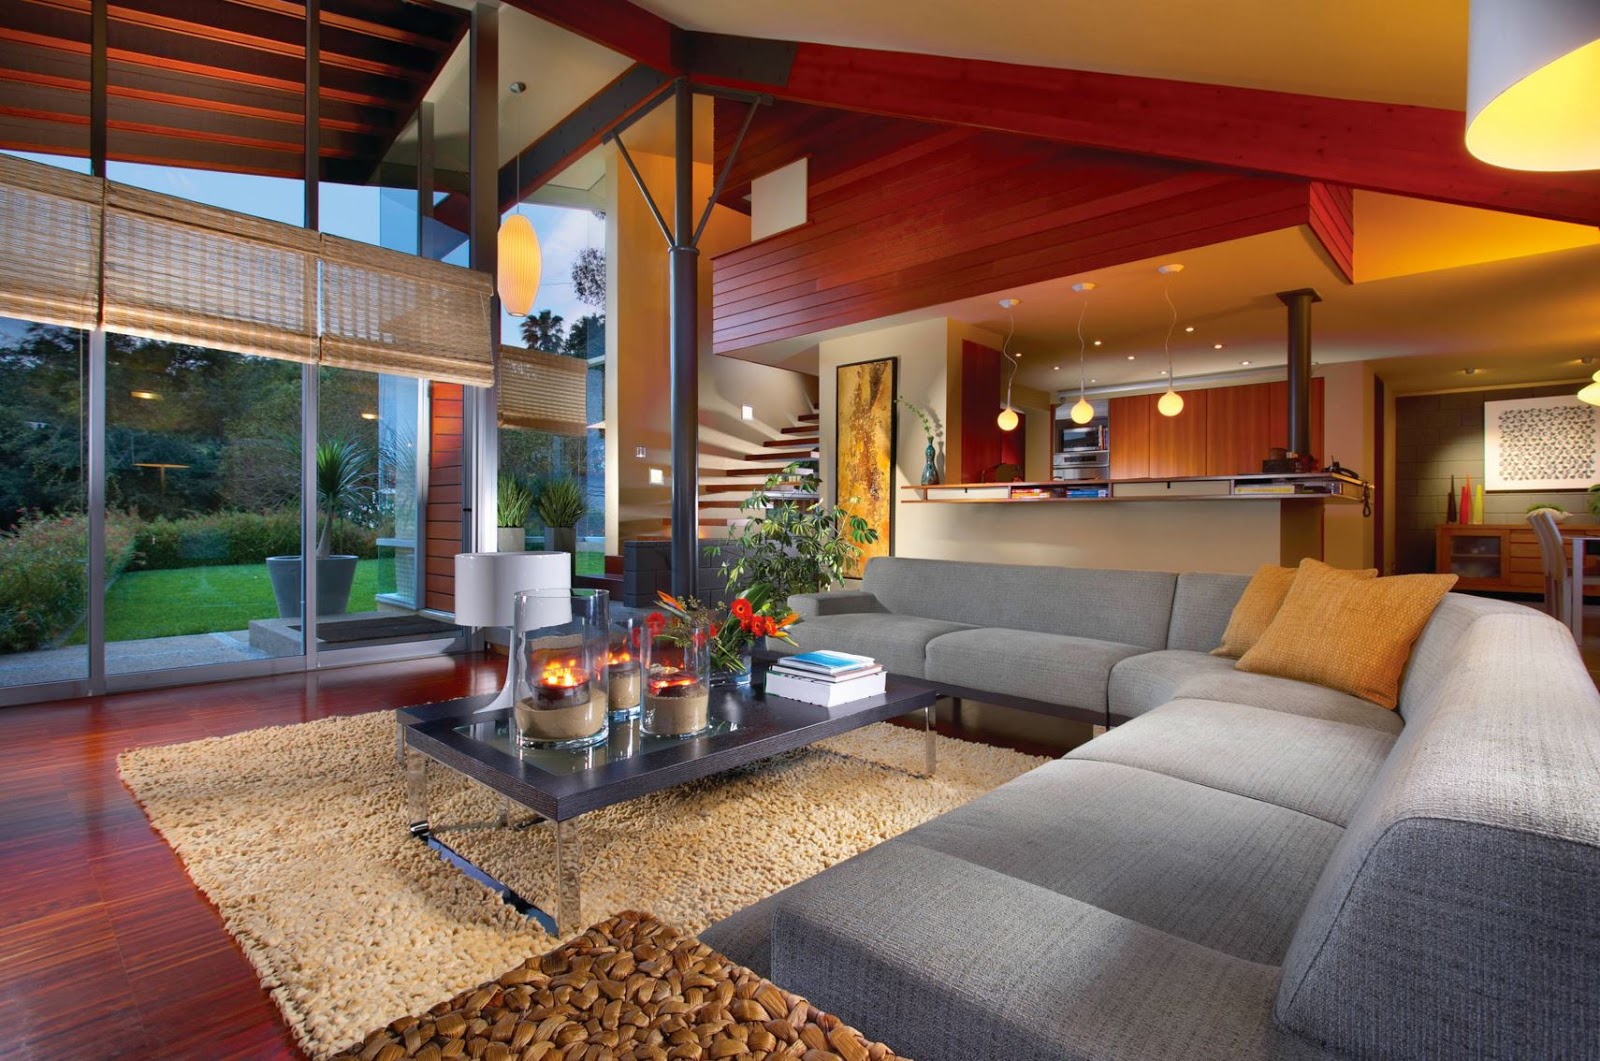  Home Interior Design Description for Living room